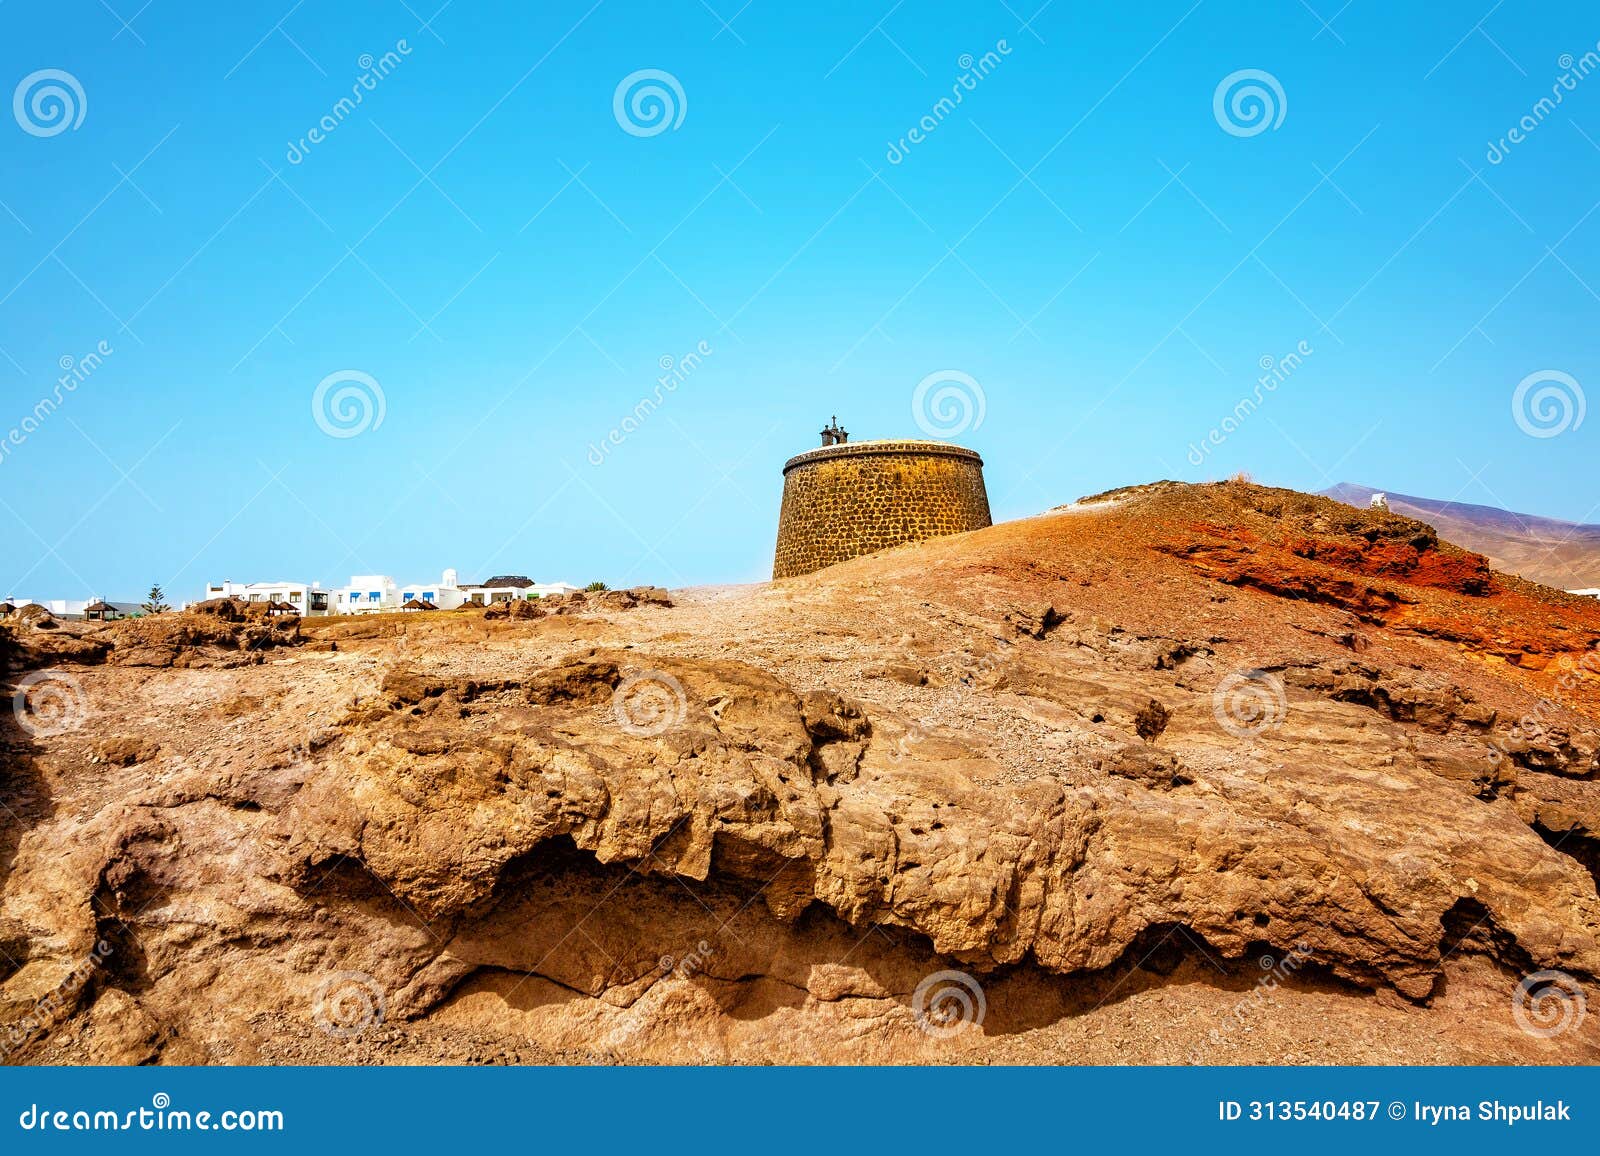 castle of san marcial de rubicon de femes, island lanzarote, canary islands, spain, europe